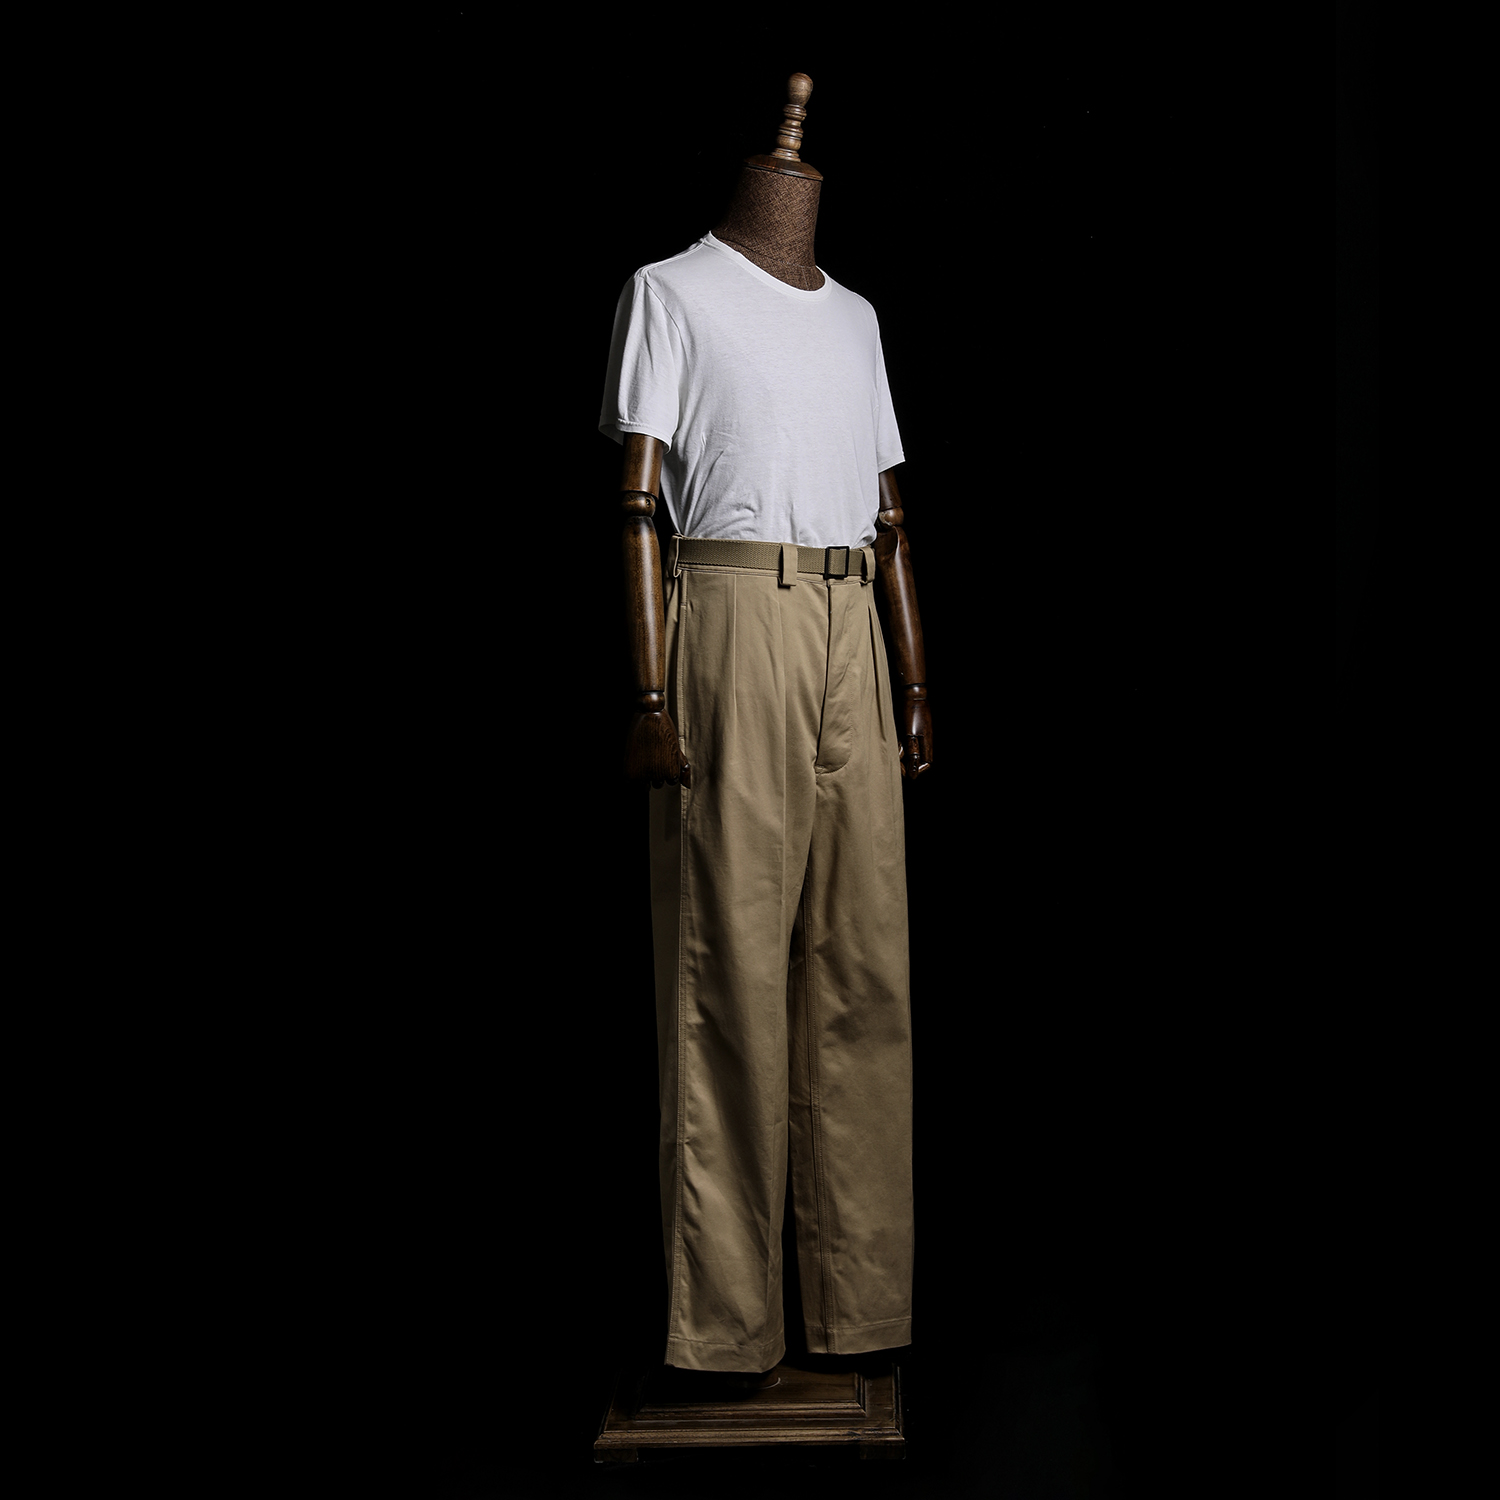 GIZEMO 50年代风格法国Chino长裤 经典复古休闲卡其裤美国长绒棉